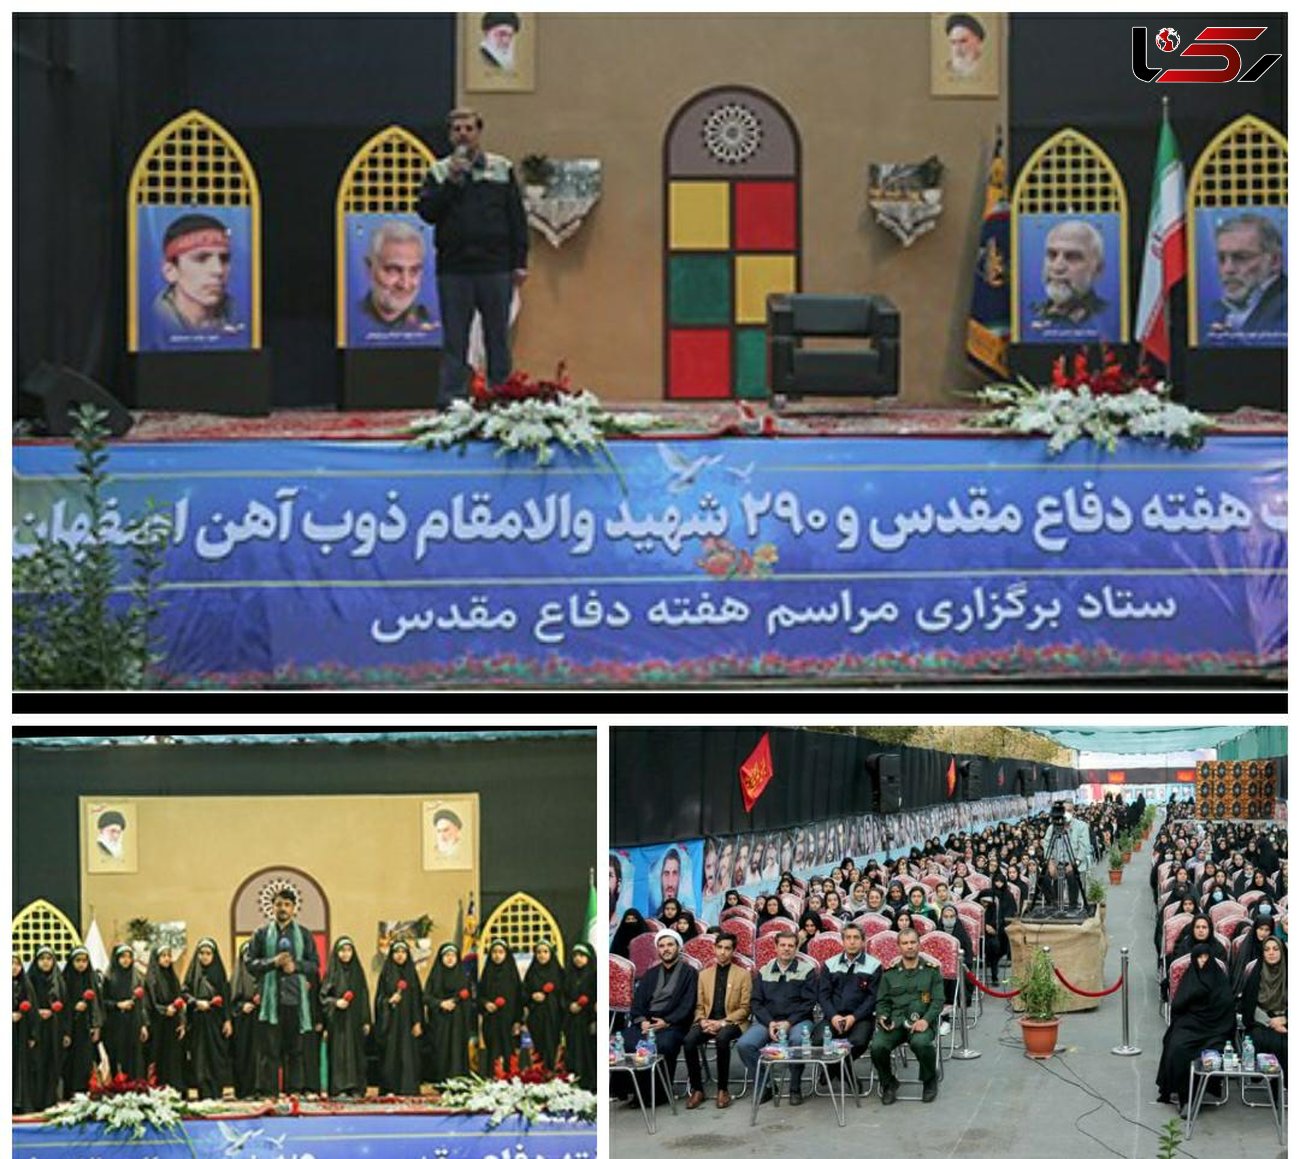 برگزاری همایش ریحانه های حسینی در ذوب آهن اصفهان